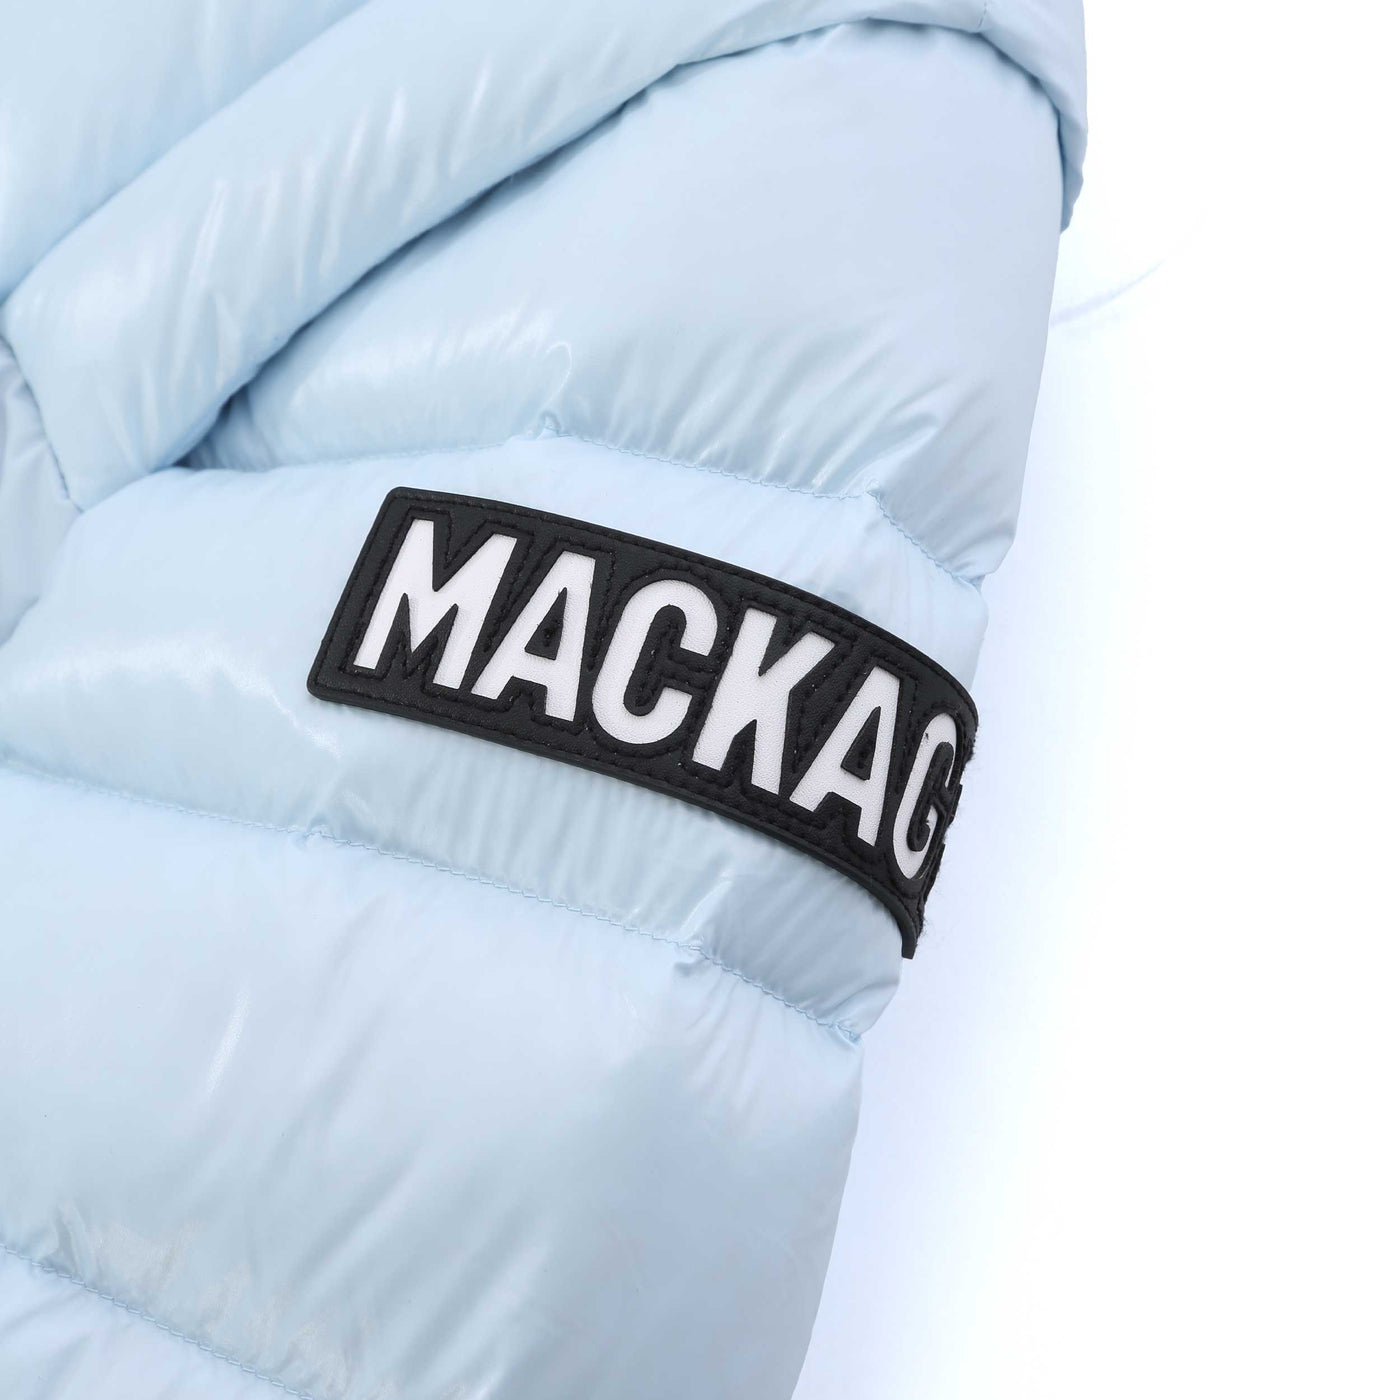 Mackage Vesna NF Ladies Jacket in Air Logo